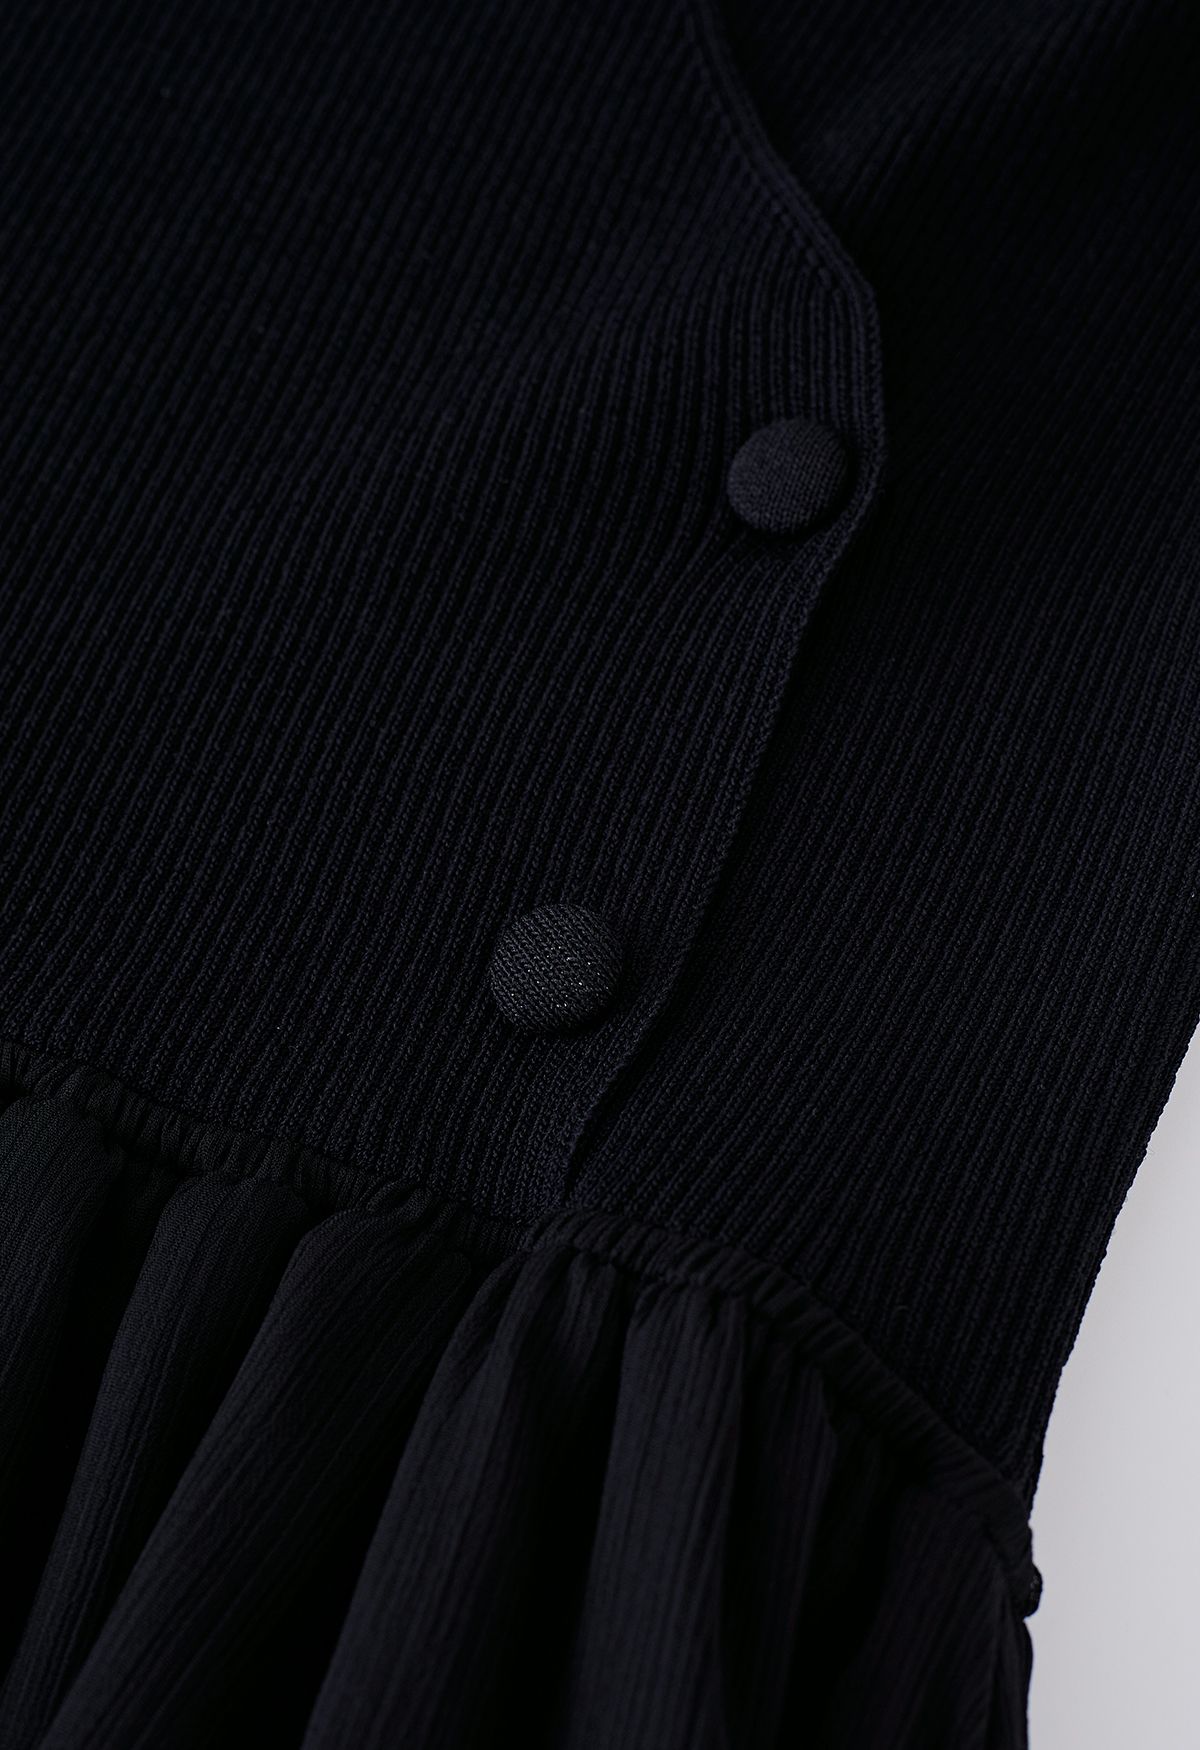 Vestido midi transparente con cuello halter empalmado de punto en negro